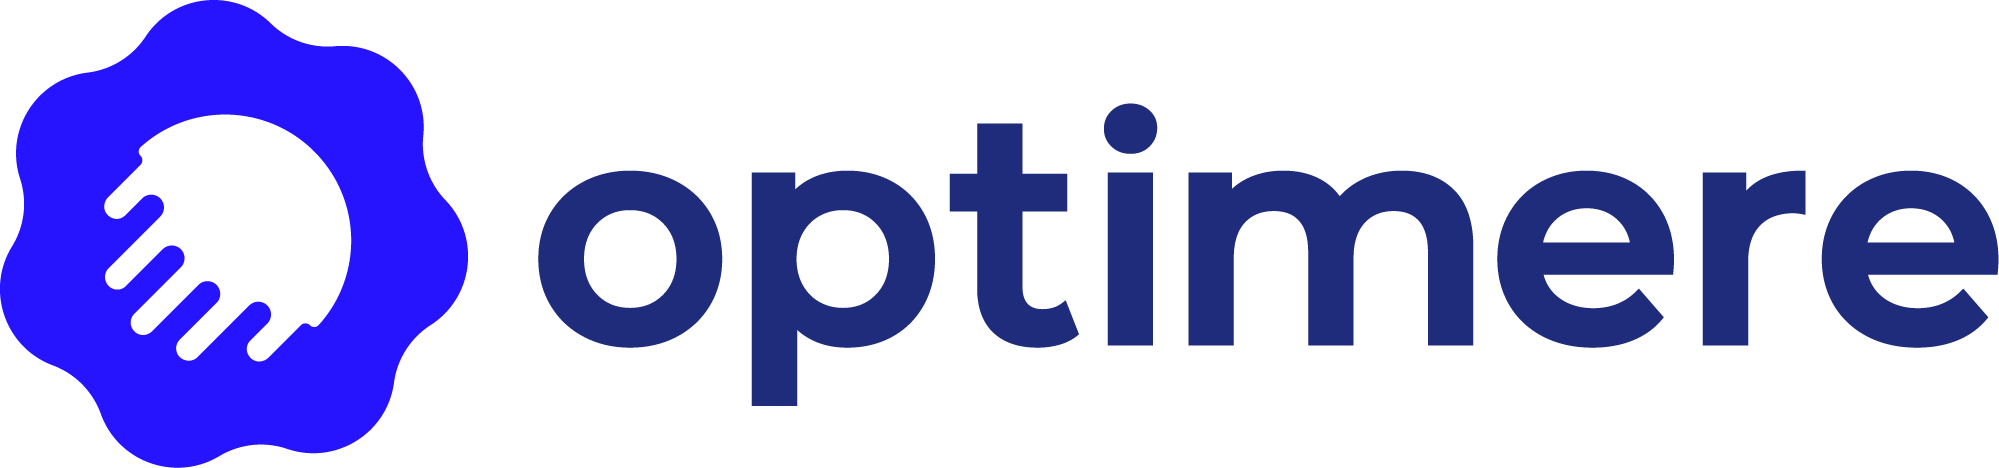 cropped-optimere-logo-blue-dark.png